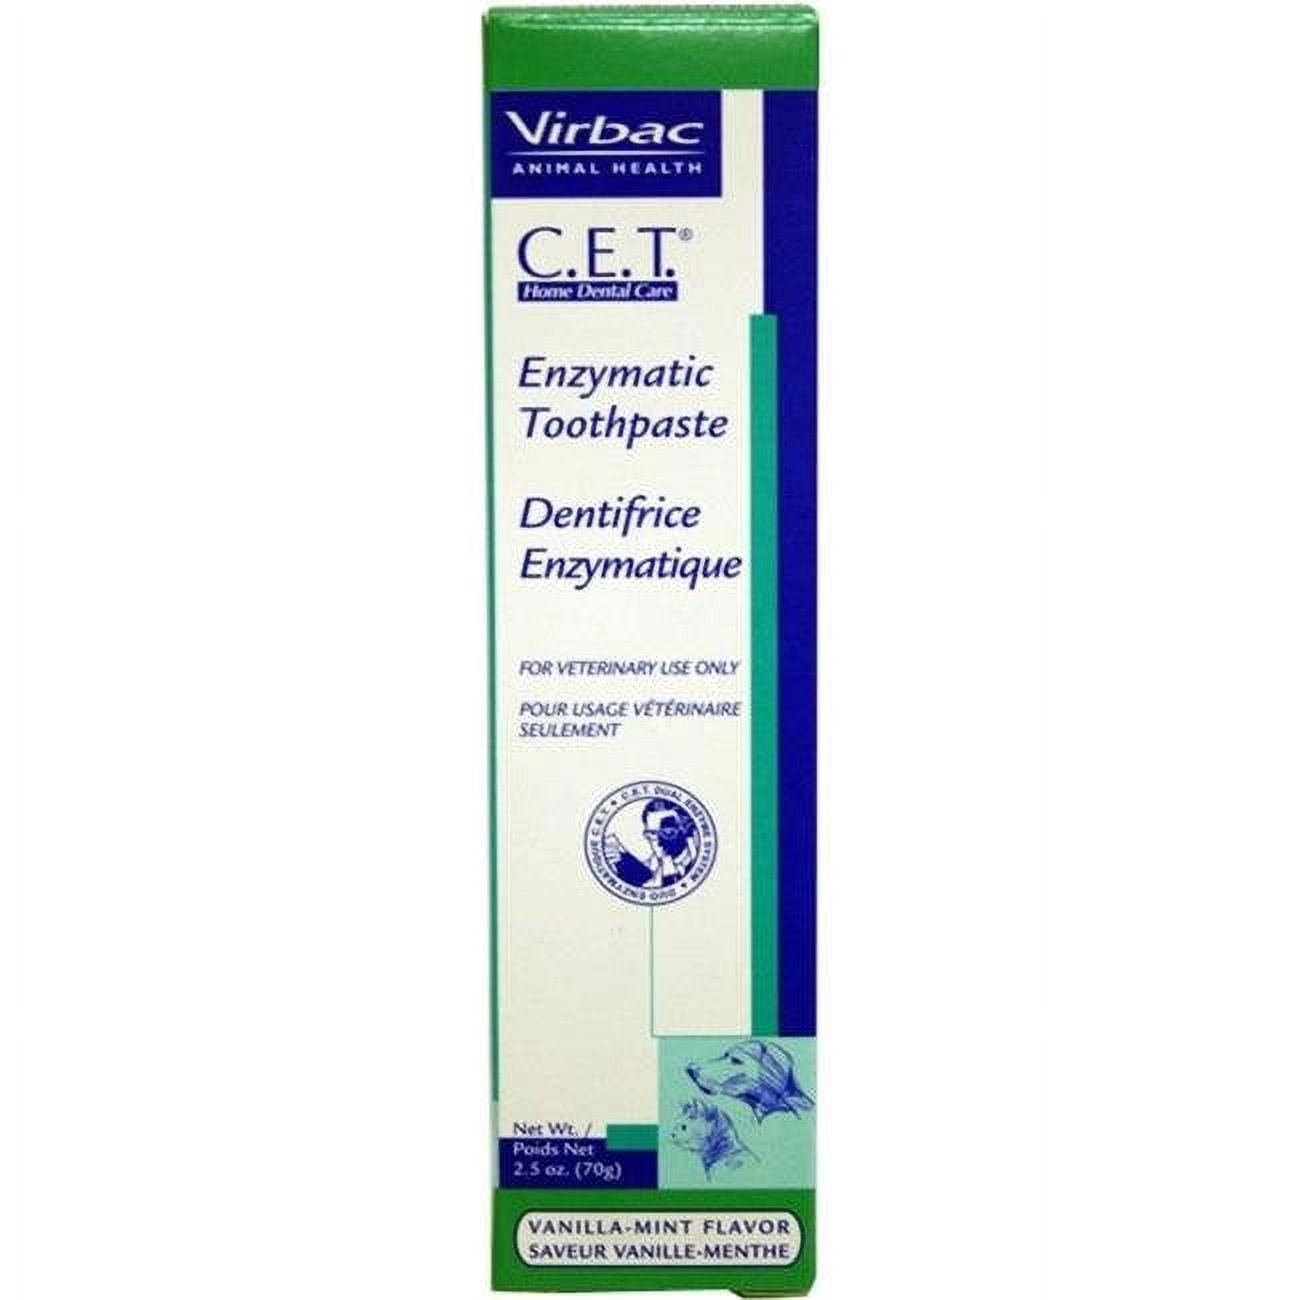 Picture of Durvet 030-CET103 2.5 oz CET Enzymatic Toothpaste